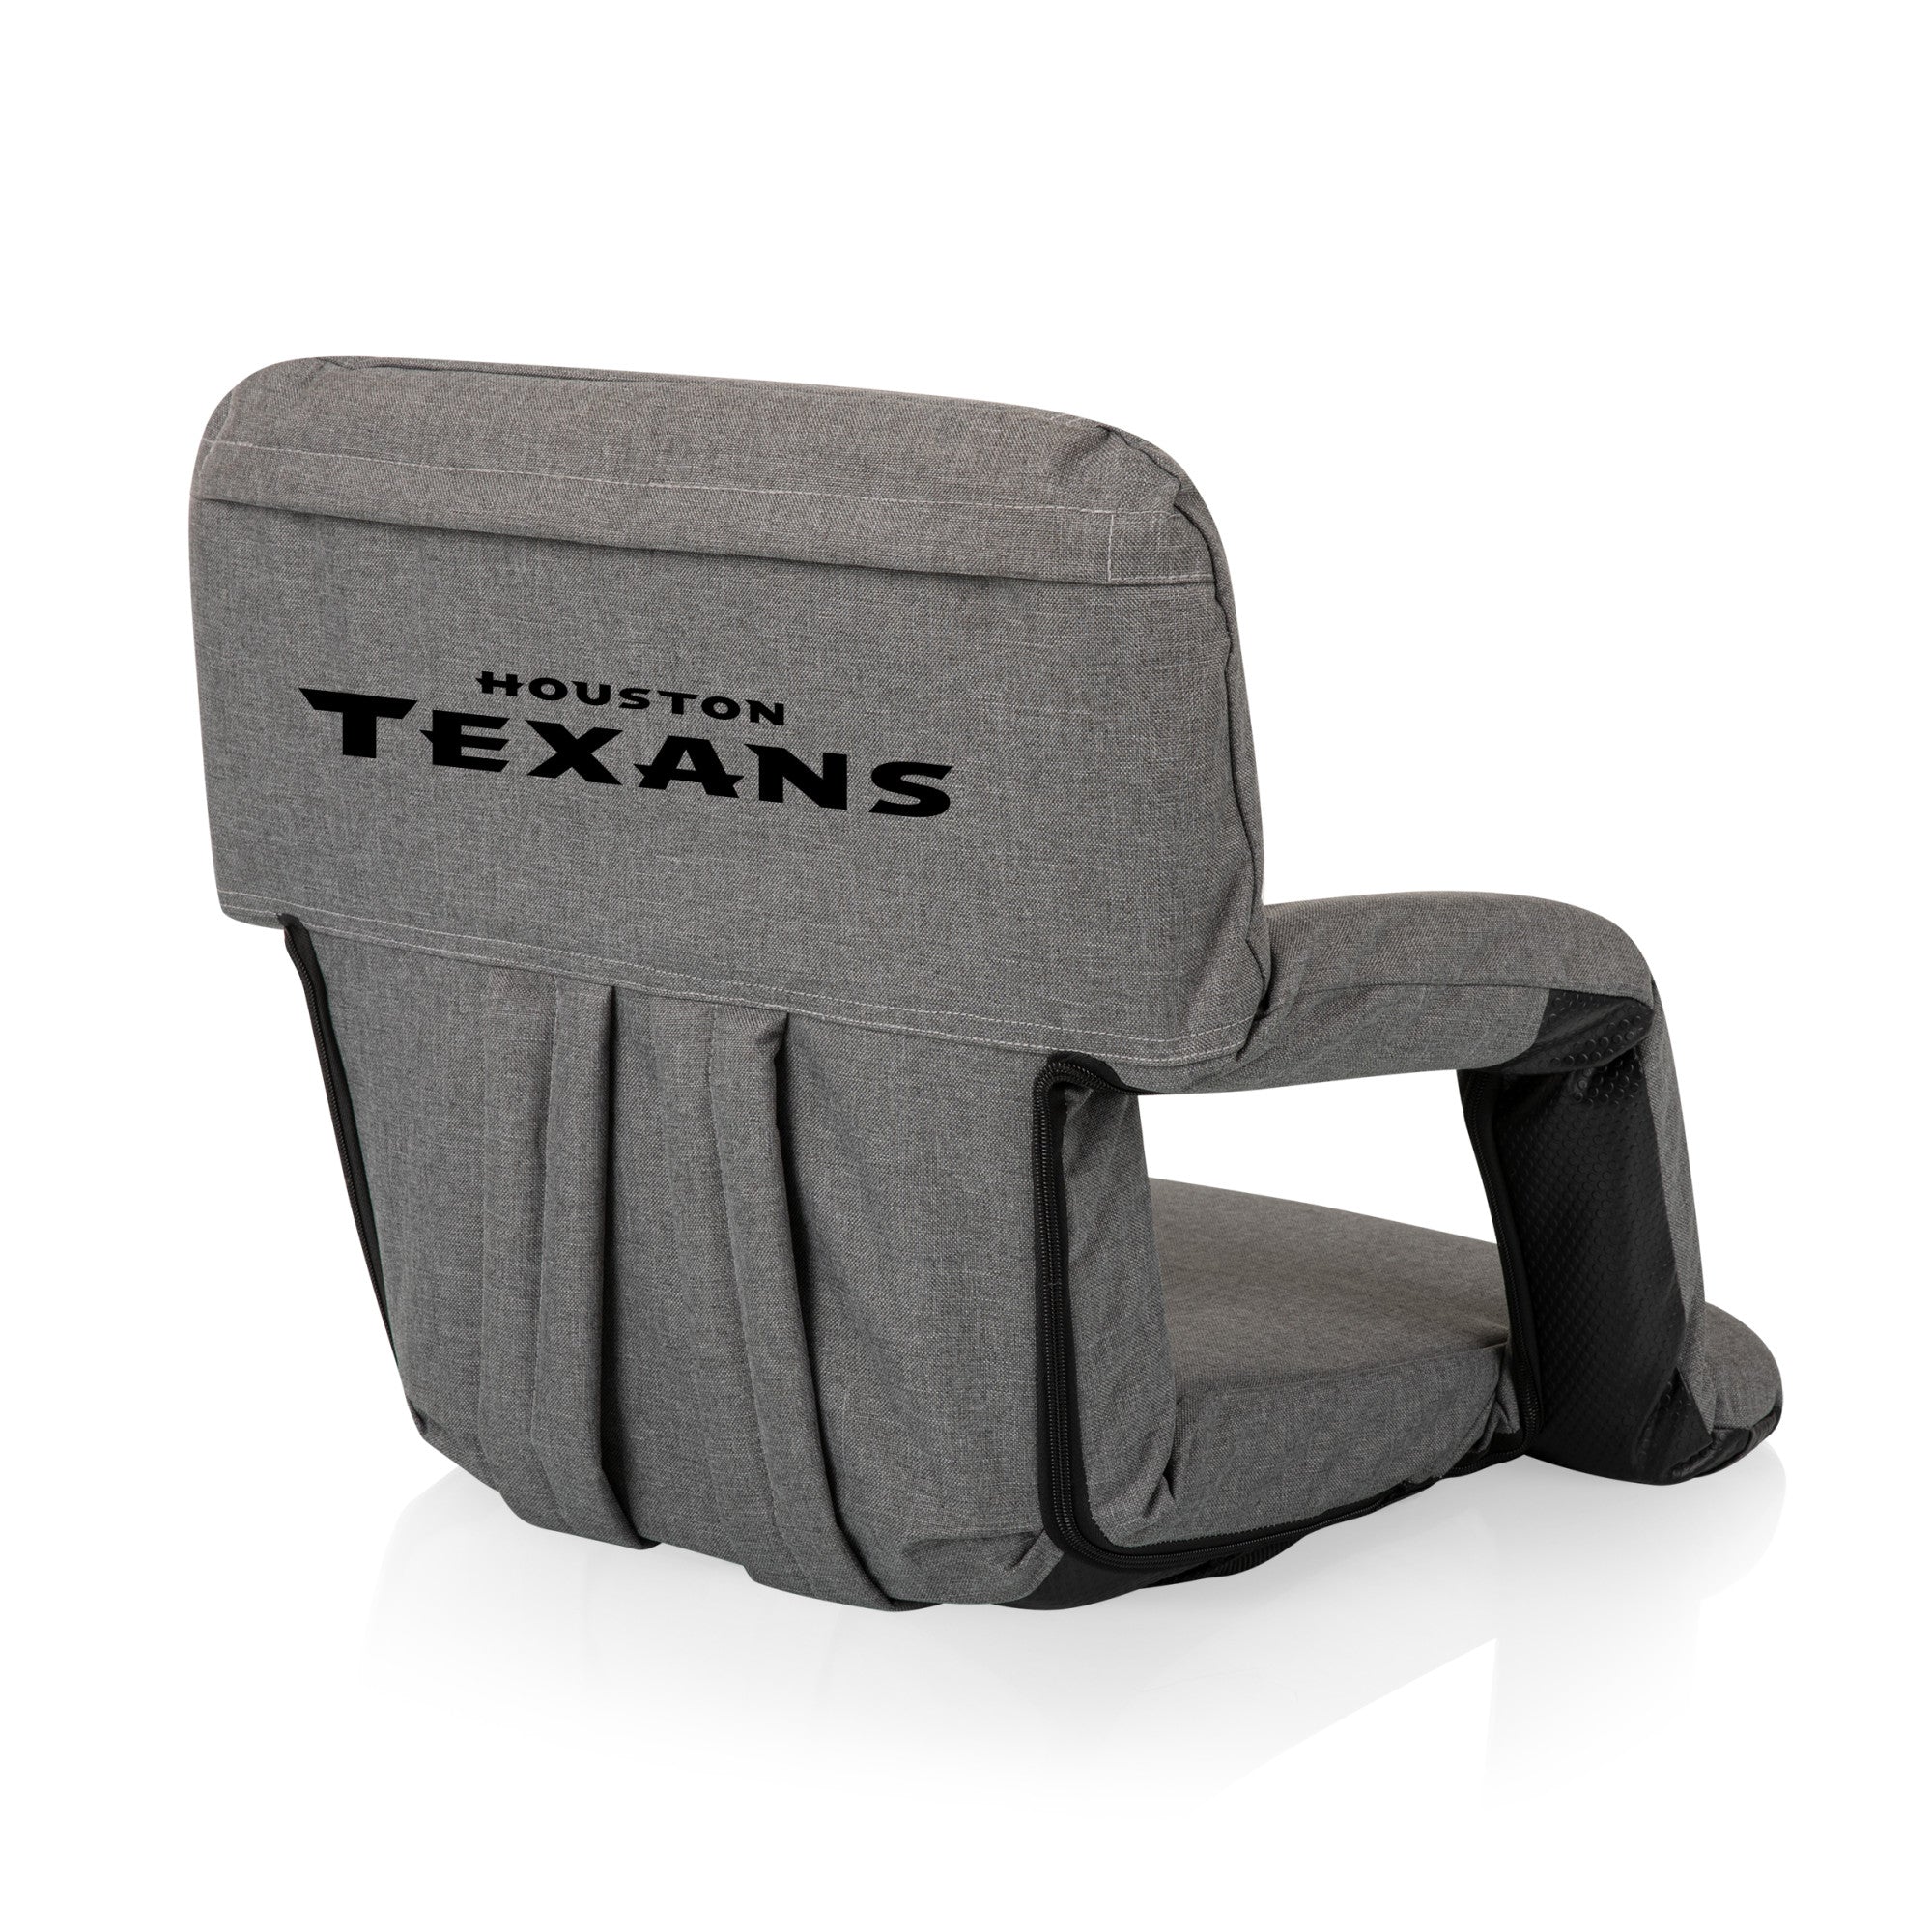 Houston Texans - Ventura Portable Reclining Stadium Seat